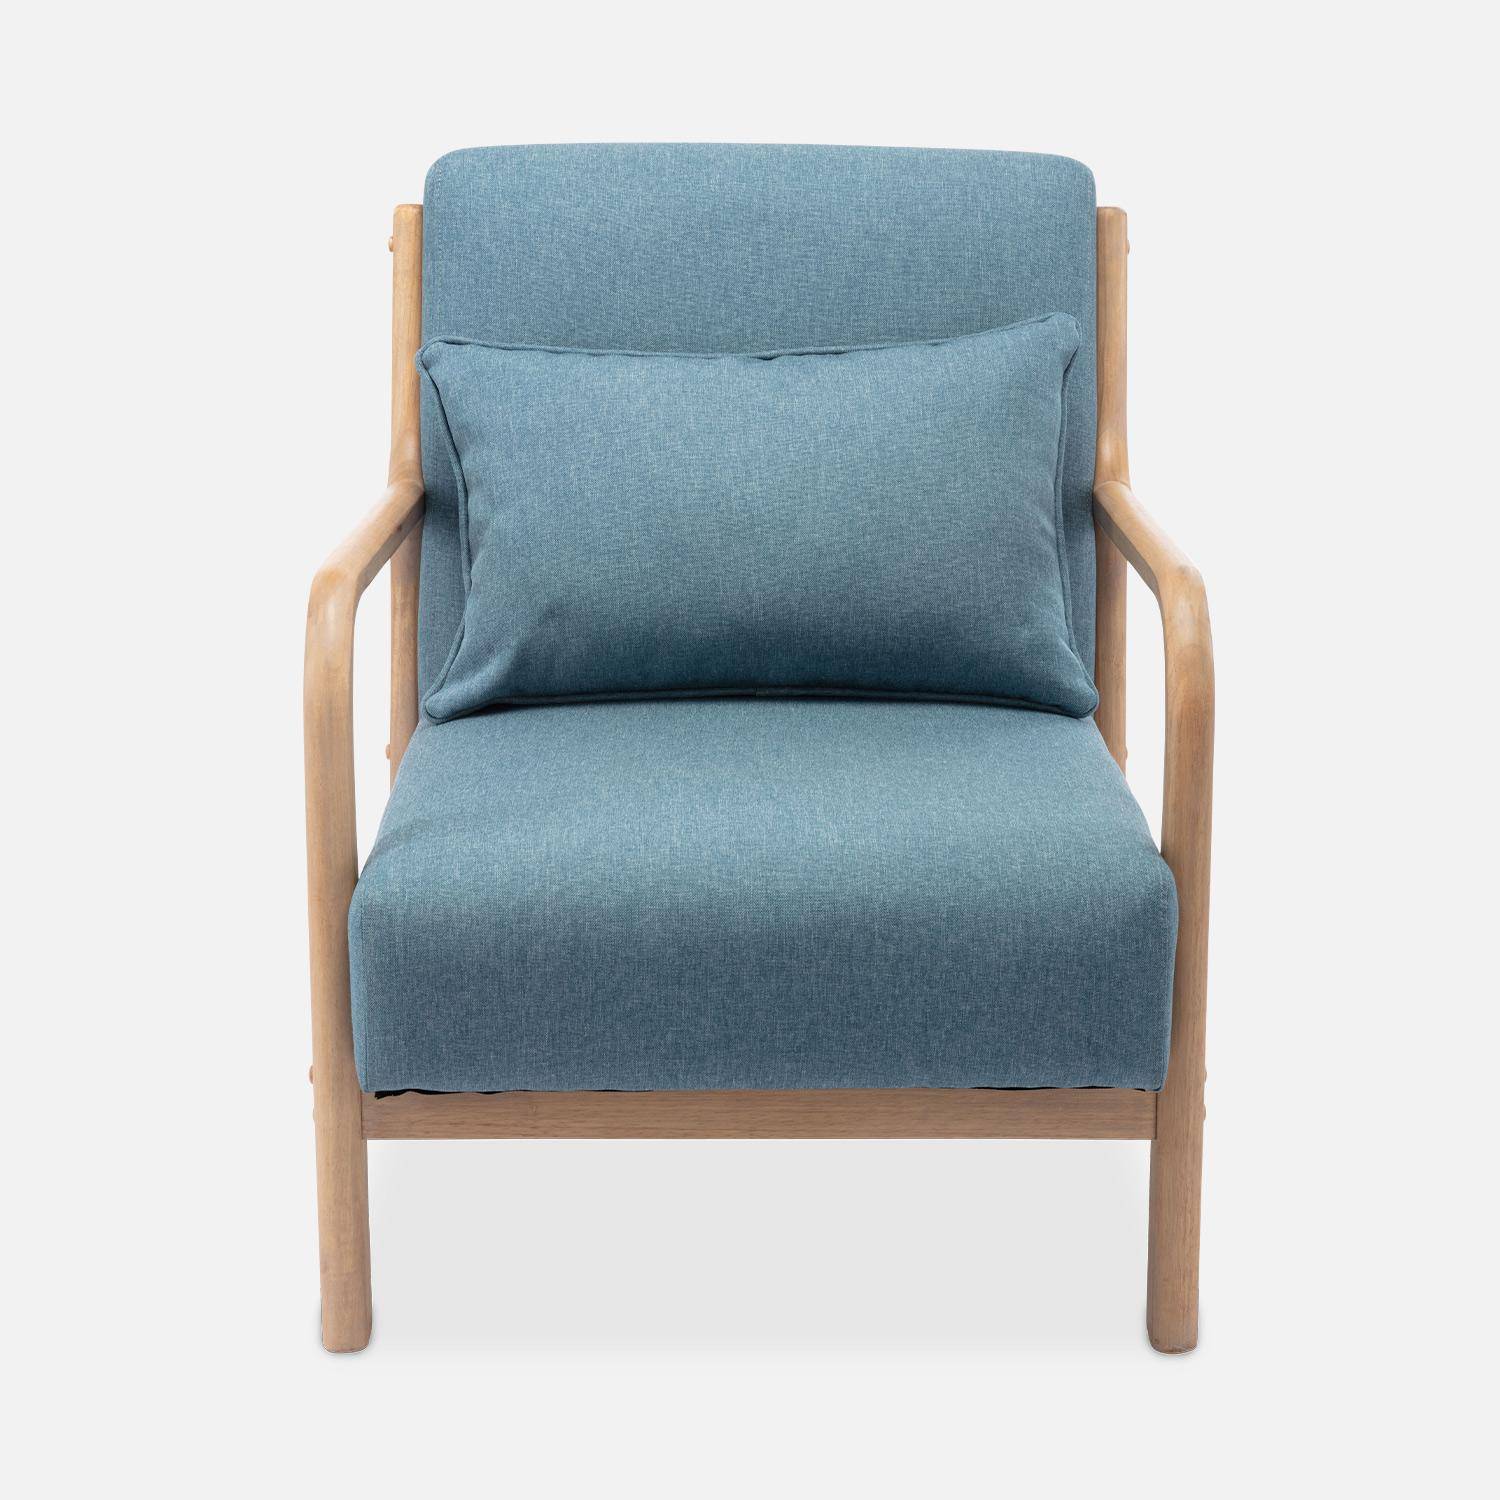 Cadeirão de design em madeira e tecido, 1 assento reto fixo, pernas escandinavas em forma de compasso, assento confortável, estrutura em madeira maciça, azul,sweeek,Photo5